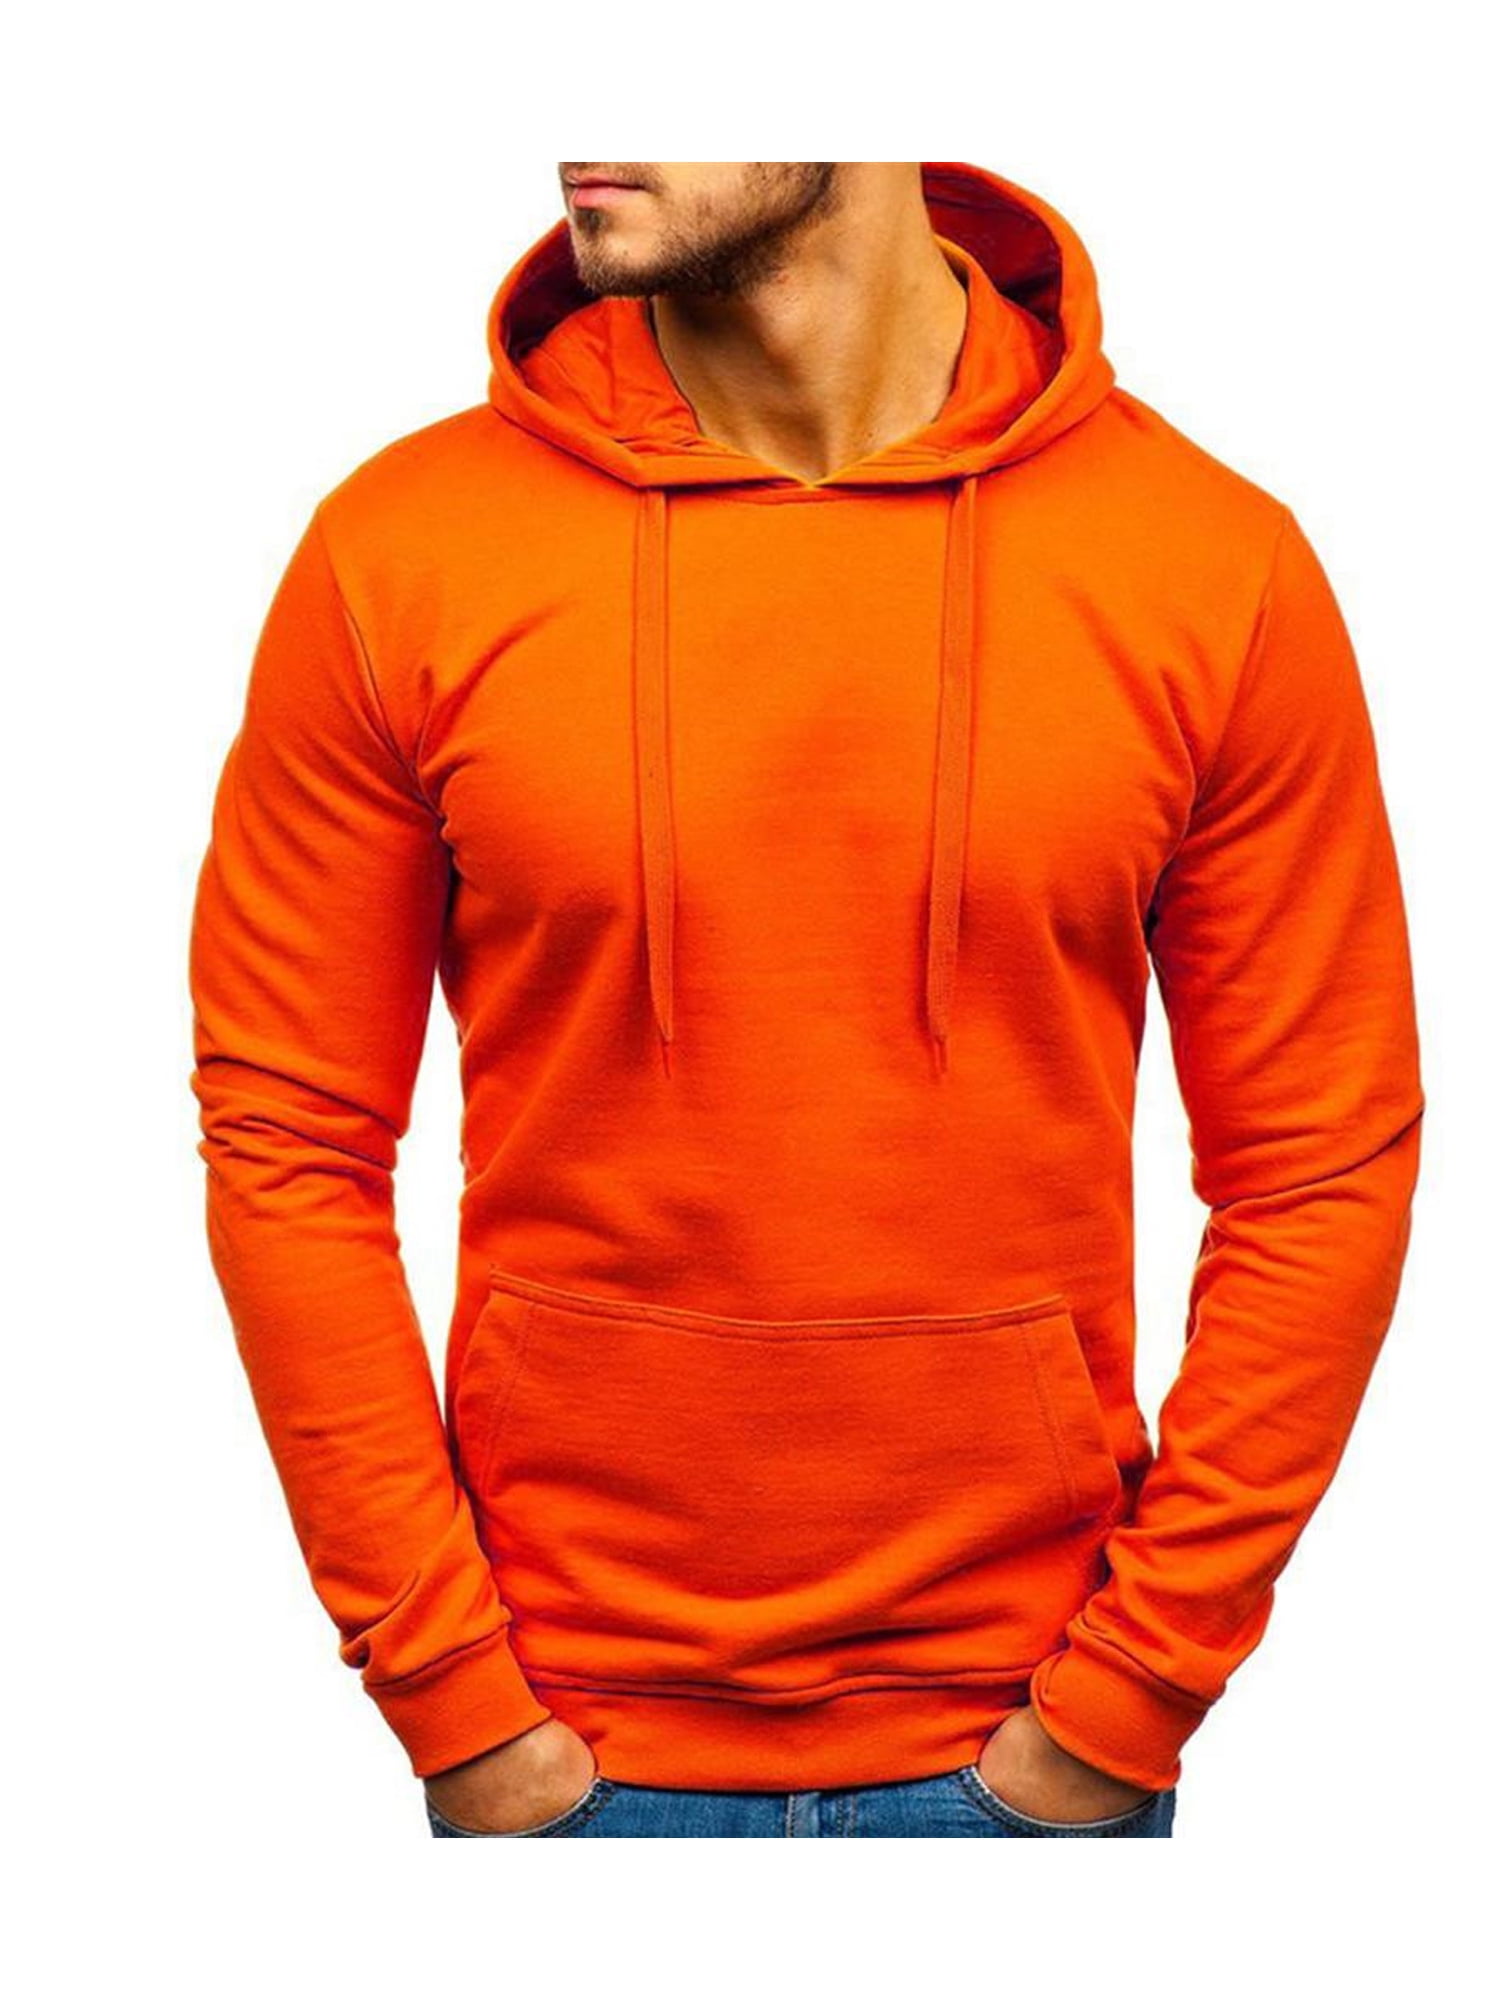 ANYSENSE Mens Solid Hoodie Pullover Long Jumper Sport Casual Hooded Sweatshirt jacket Walmart.com